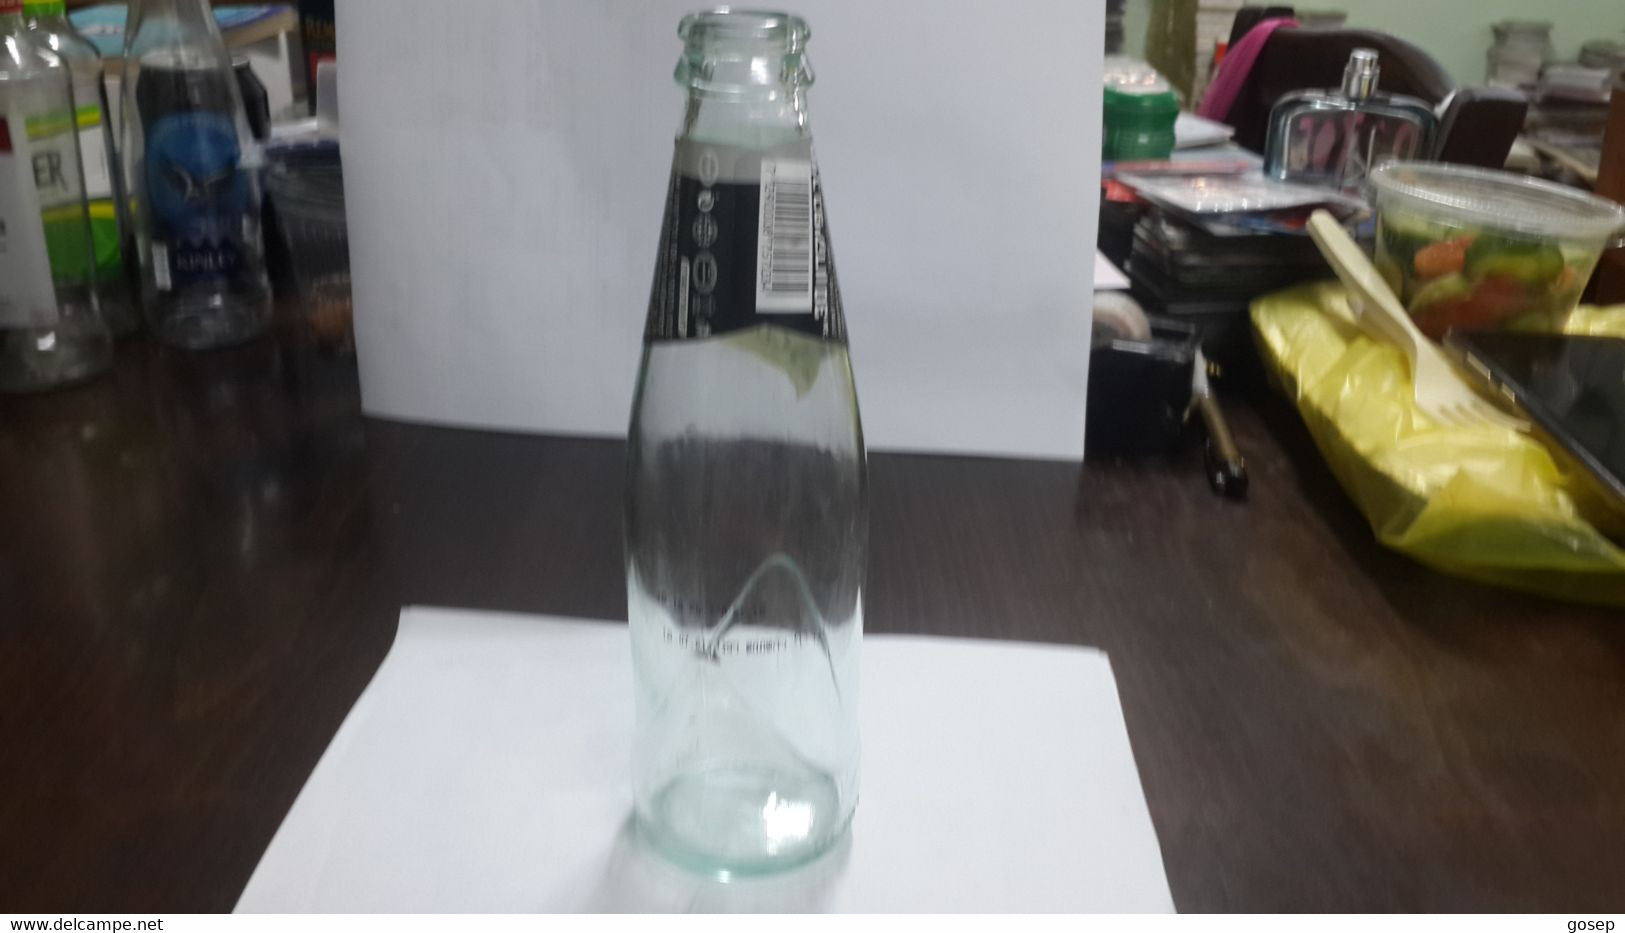 Israel-soda Bottle-schweppes-(100ml)-yafora-tavori Ltd - Soda